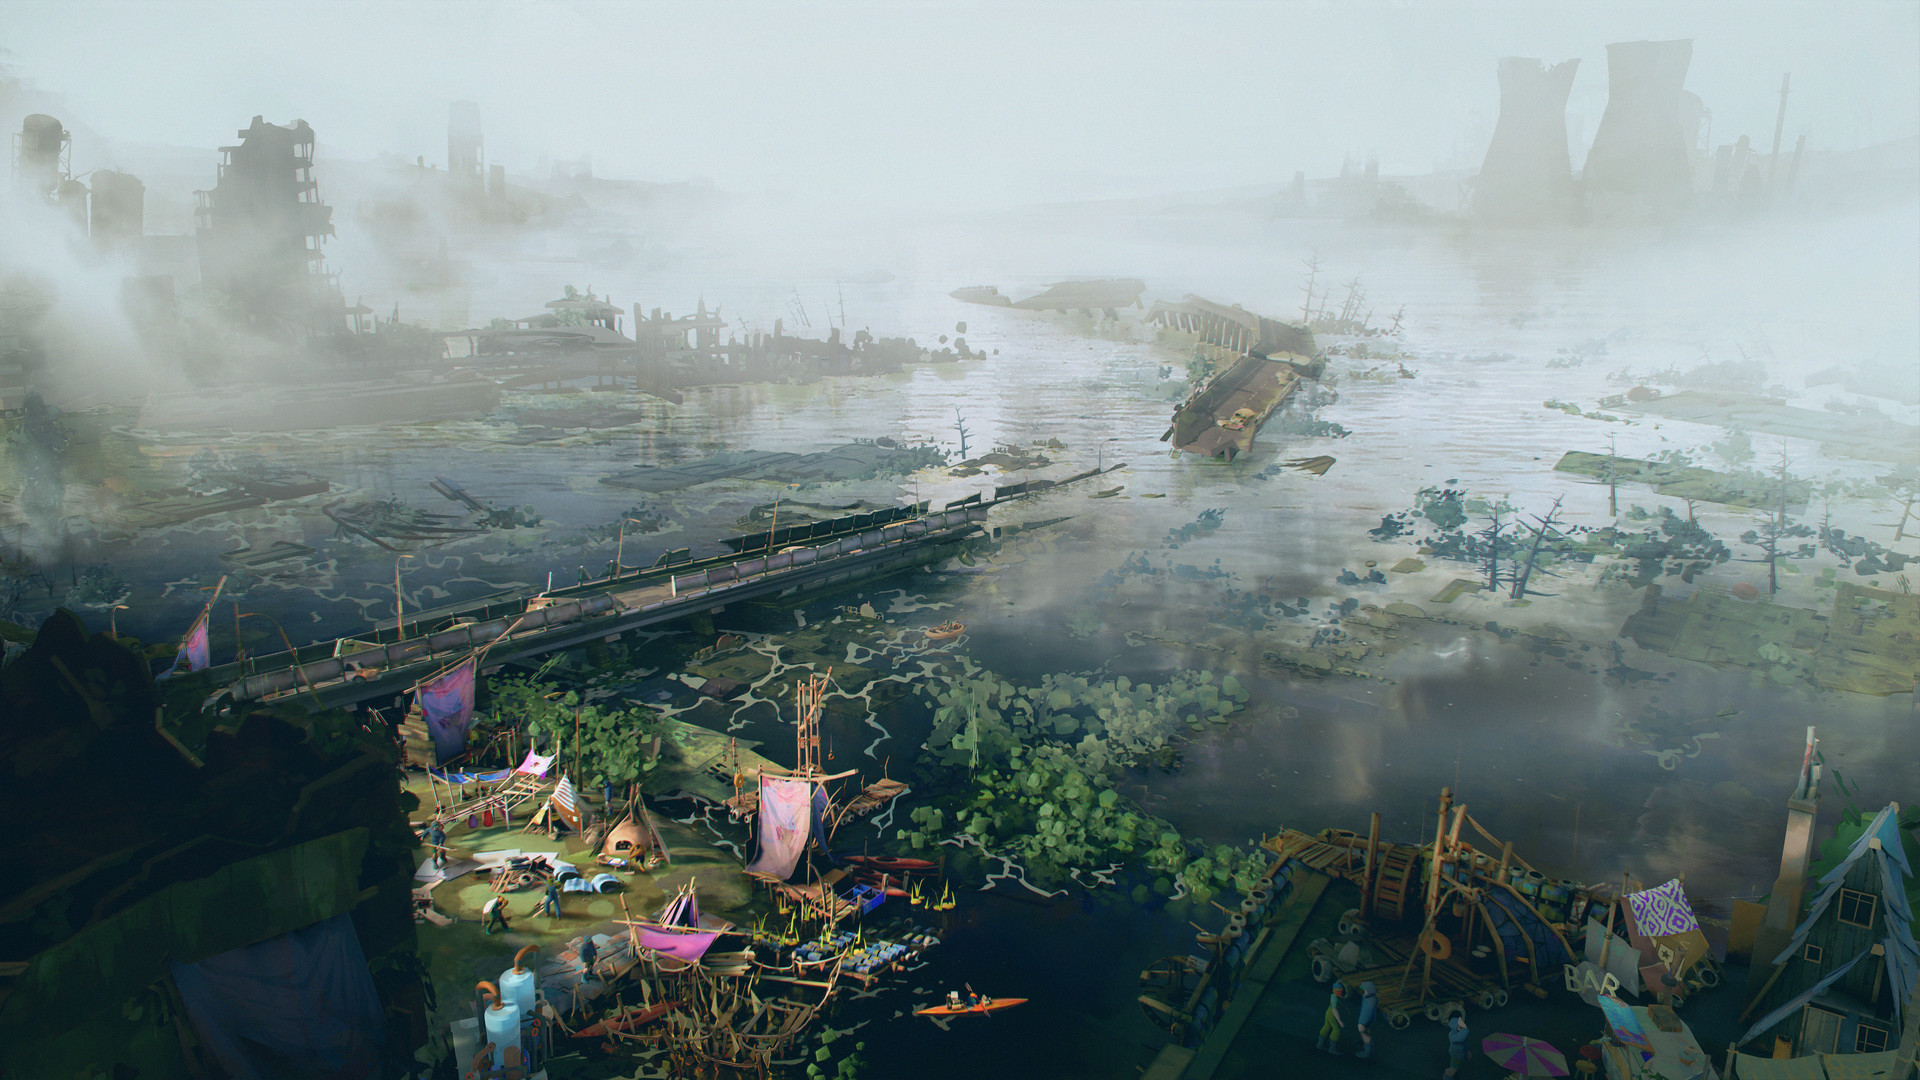 末世模拟《洪泛》上市日期公布 免费试玩版今日推出 二次世界 第2张